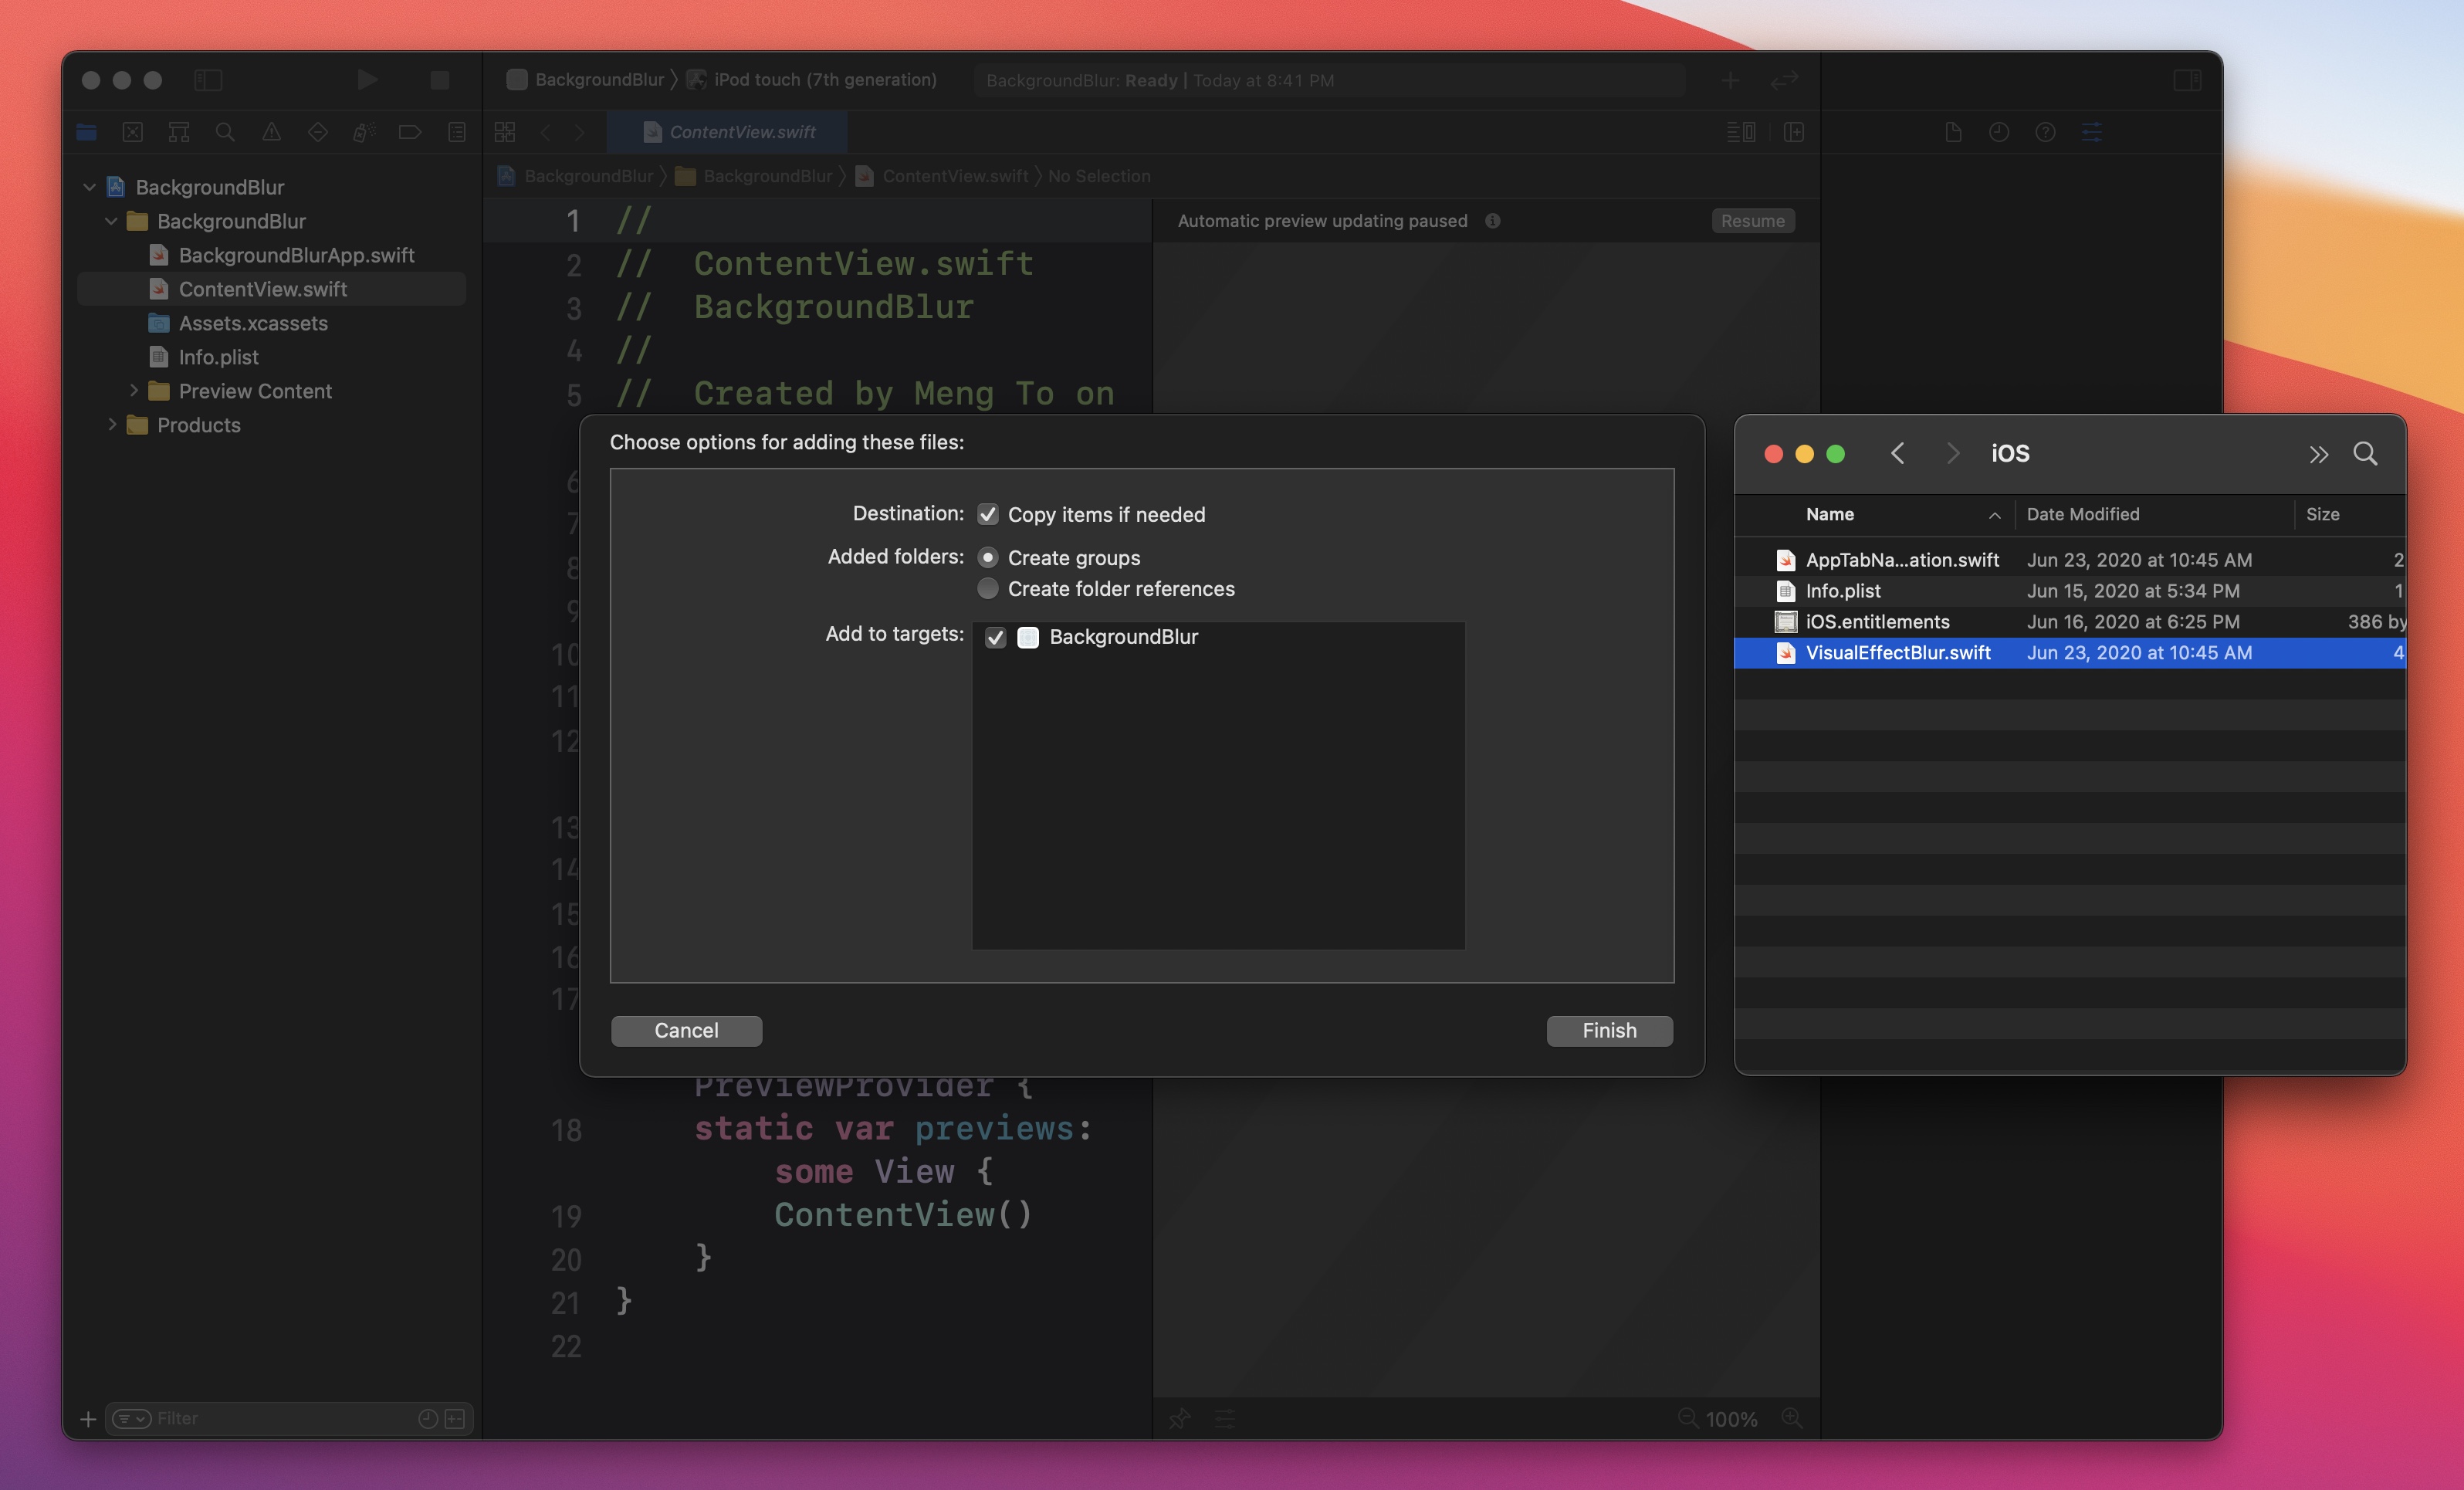 Nền mờ - Hướng dẫn SwiftUI - Thiết kế+Code: Bạn đang tìm kiếm một cách để thiết kế giao diện đẹp với hiệu ứng nền mờ đẹp mắt? Hãy xem ngay video hướng dẫn SwiftUI về nền mờ và cách kết hợp thiết kế và mã code để tạo ra hiệu ứng này. Bạn sẽ học cách tạo ra một giao diện đẹp và mượt mà với SwiftUI.